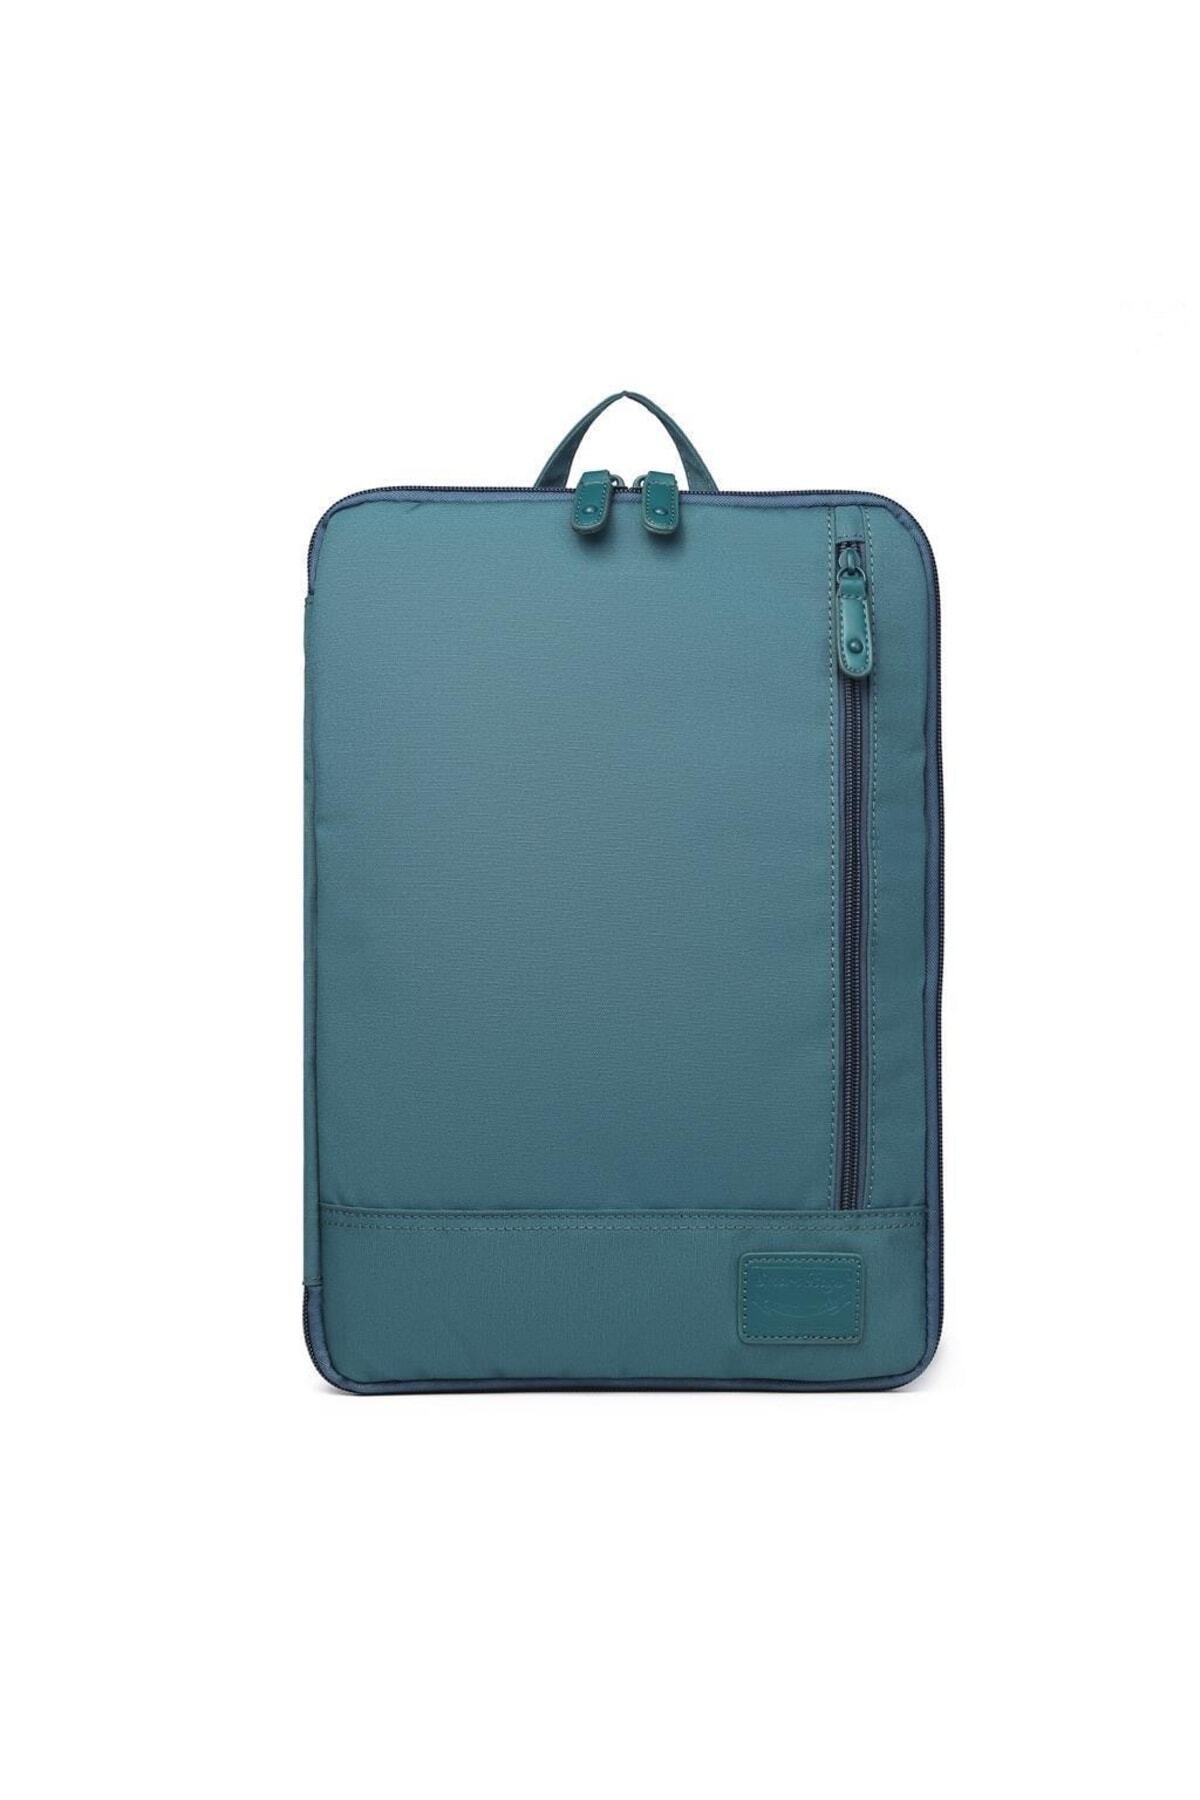 Smart Bags 31,5cm X 22cm Cihaz Için Laptop Kılıfı Uniseks 3192